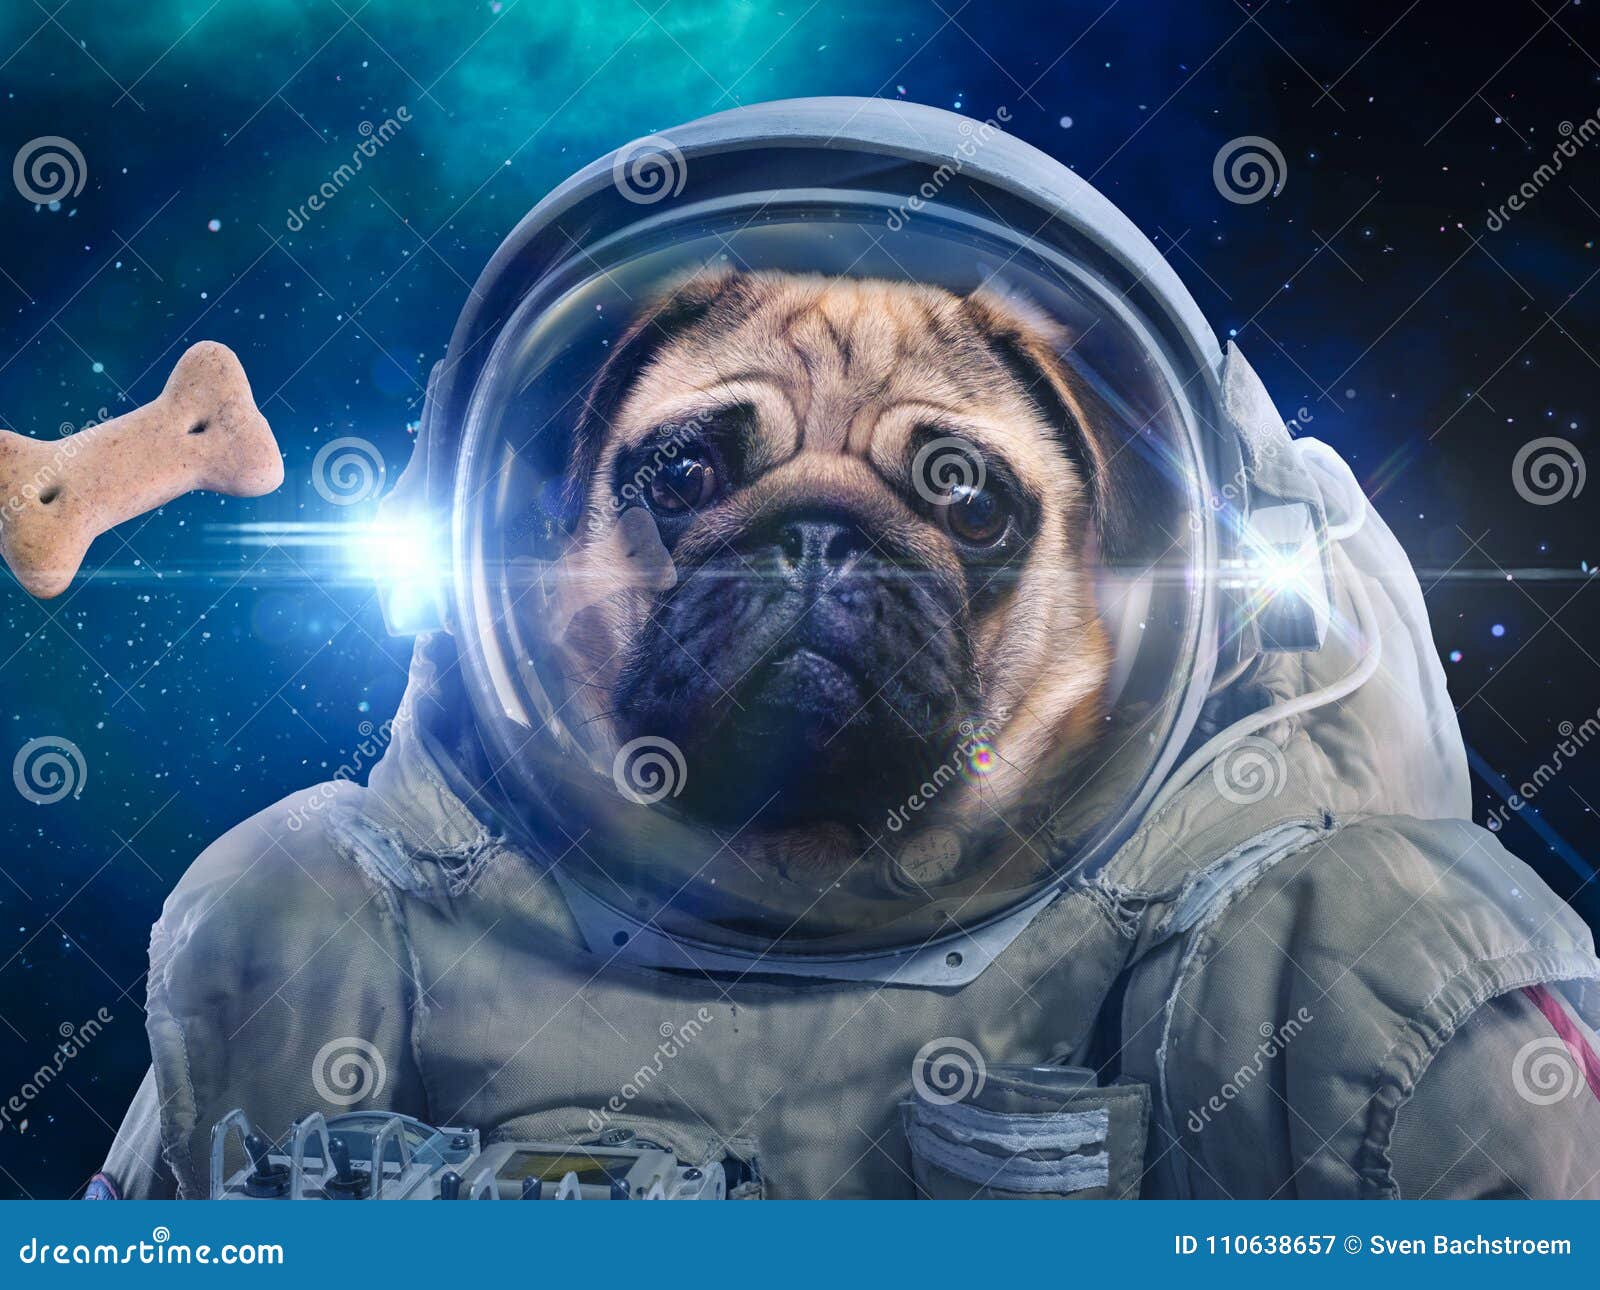 dog in space suit hunts dog food, hunt